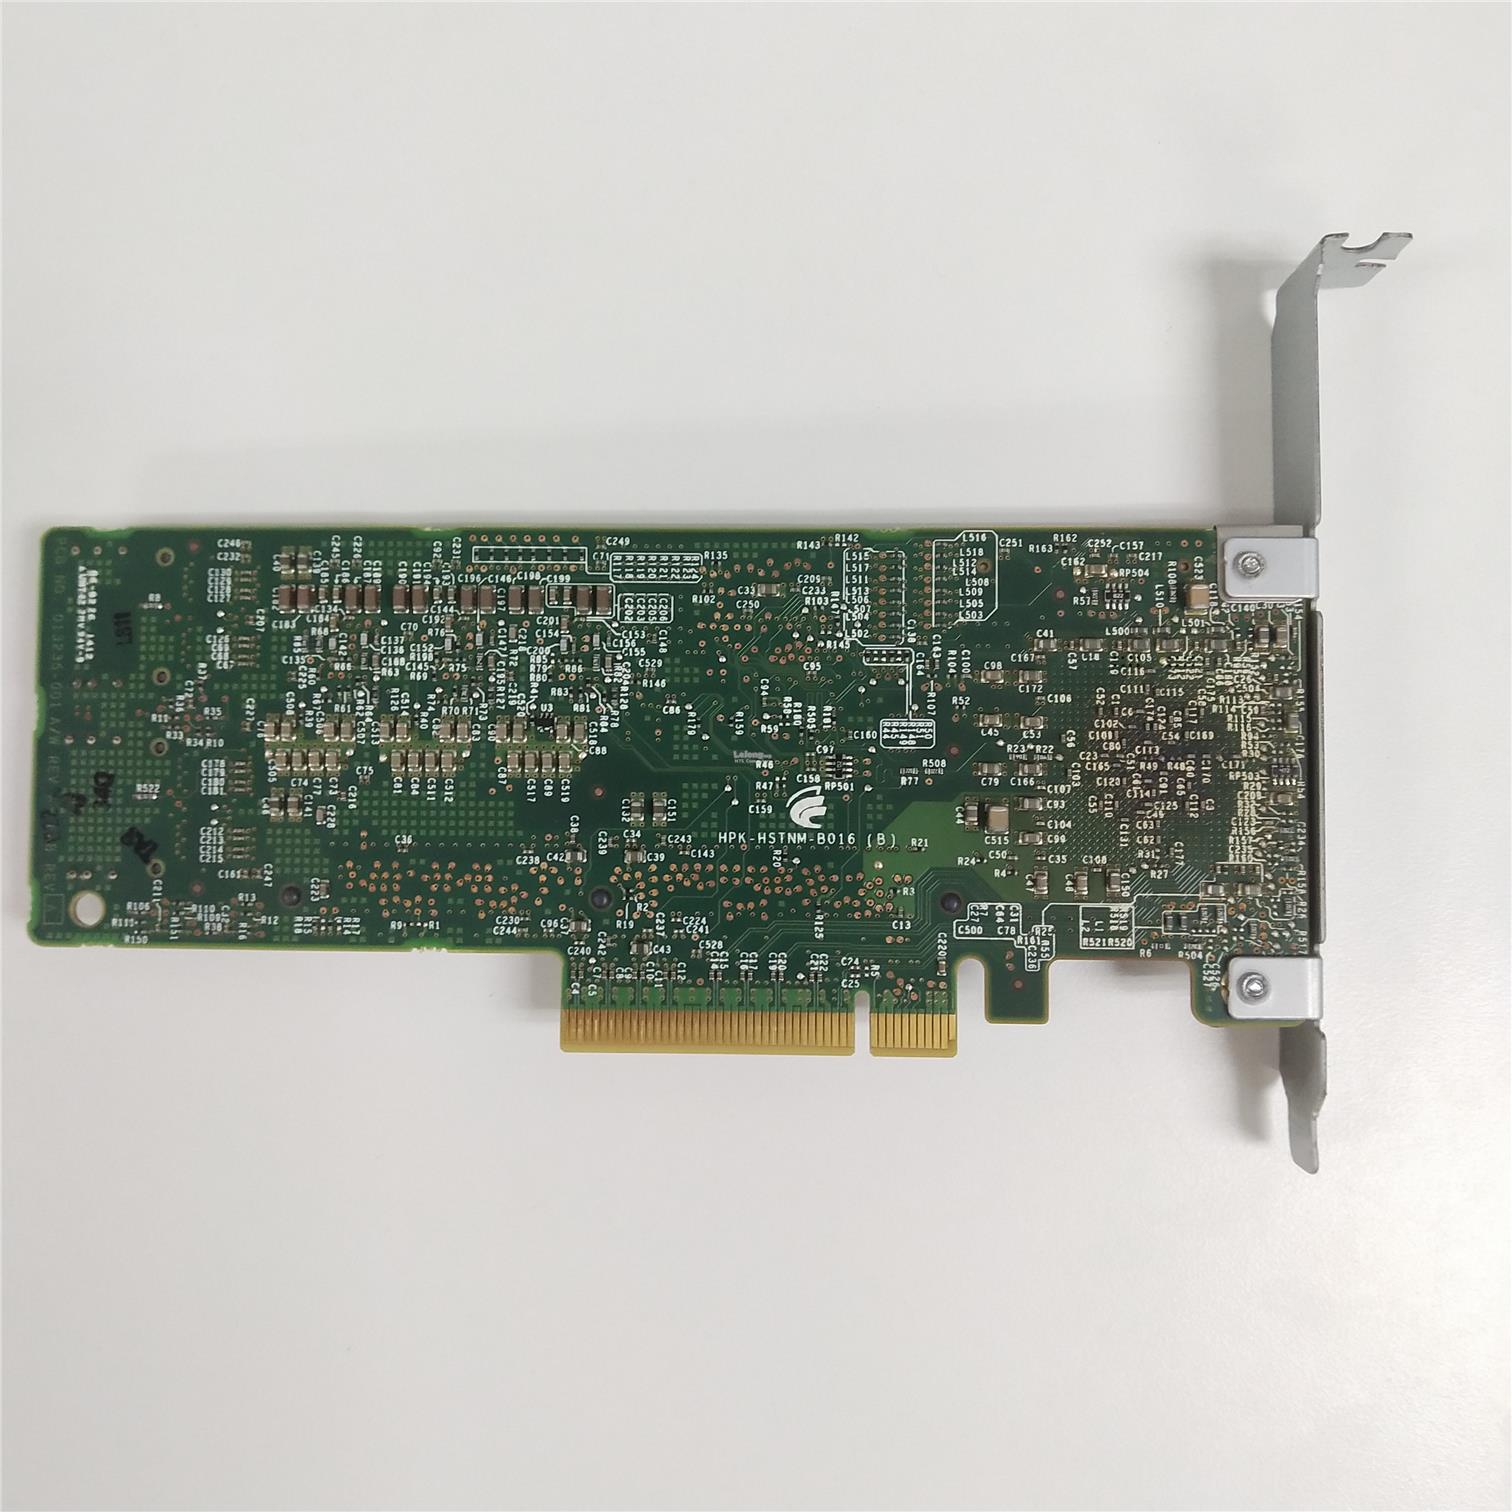 HP SMART ARRAY P410 SAS RAID CONTROLLER (013233-001)